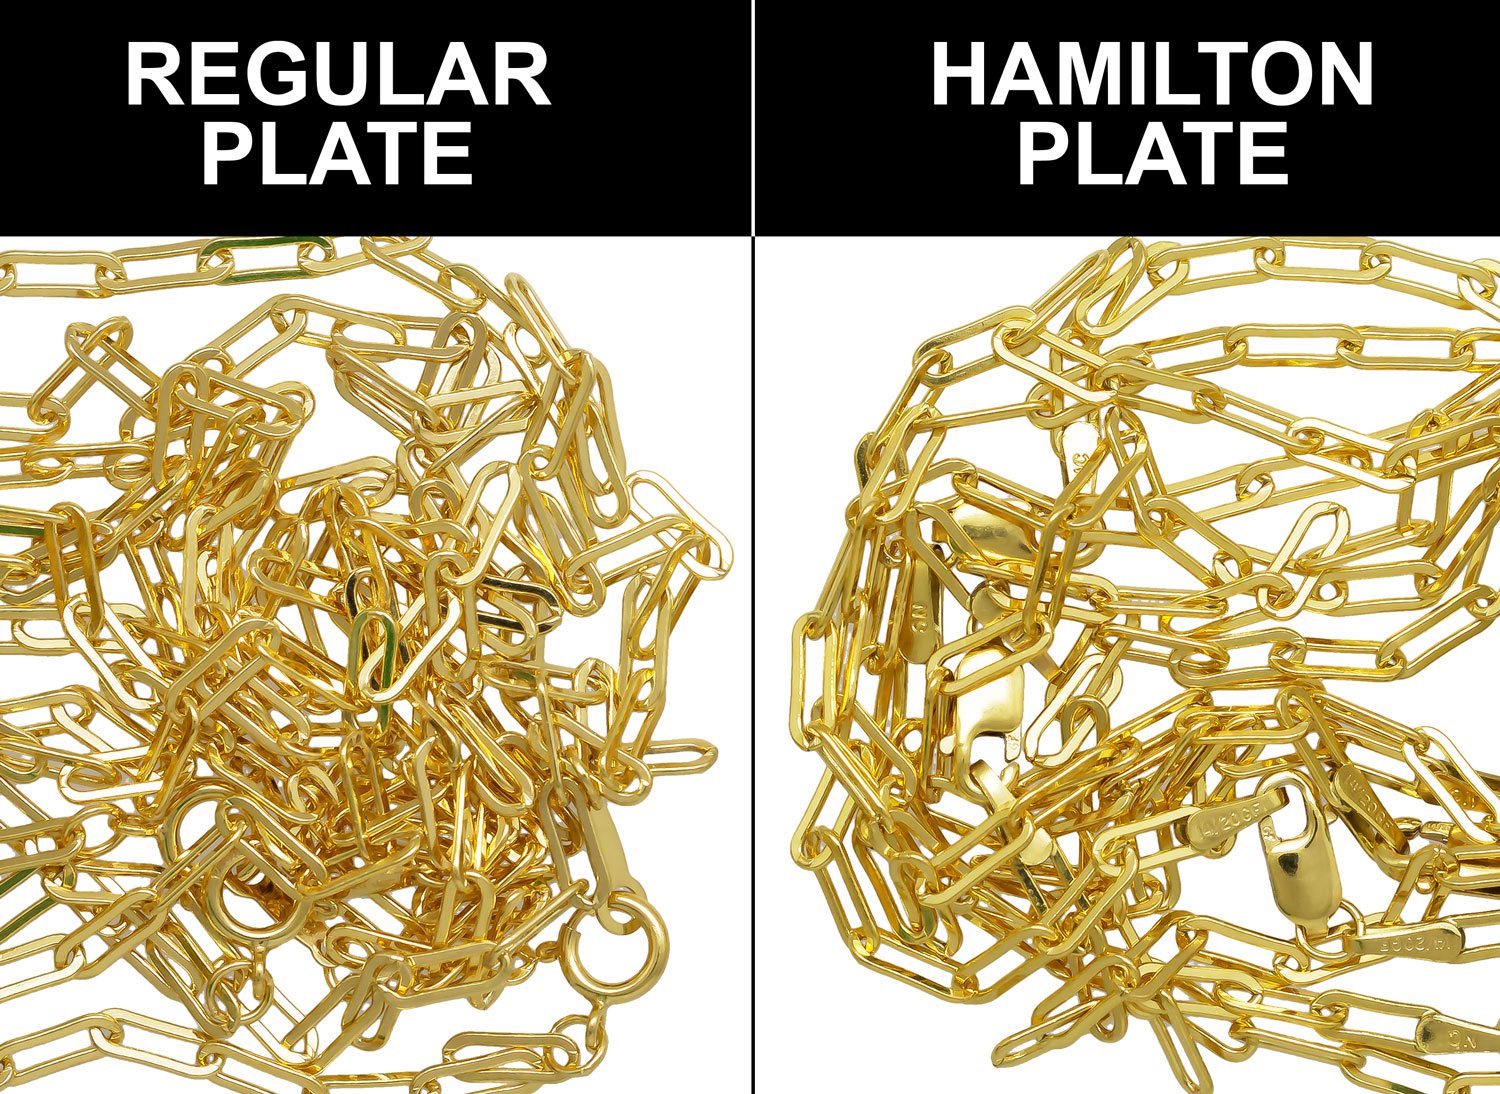 Regular Plating vs Hamilton Plating